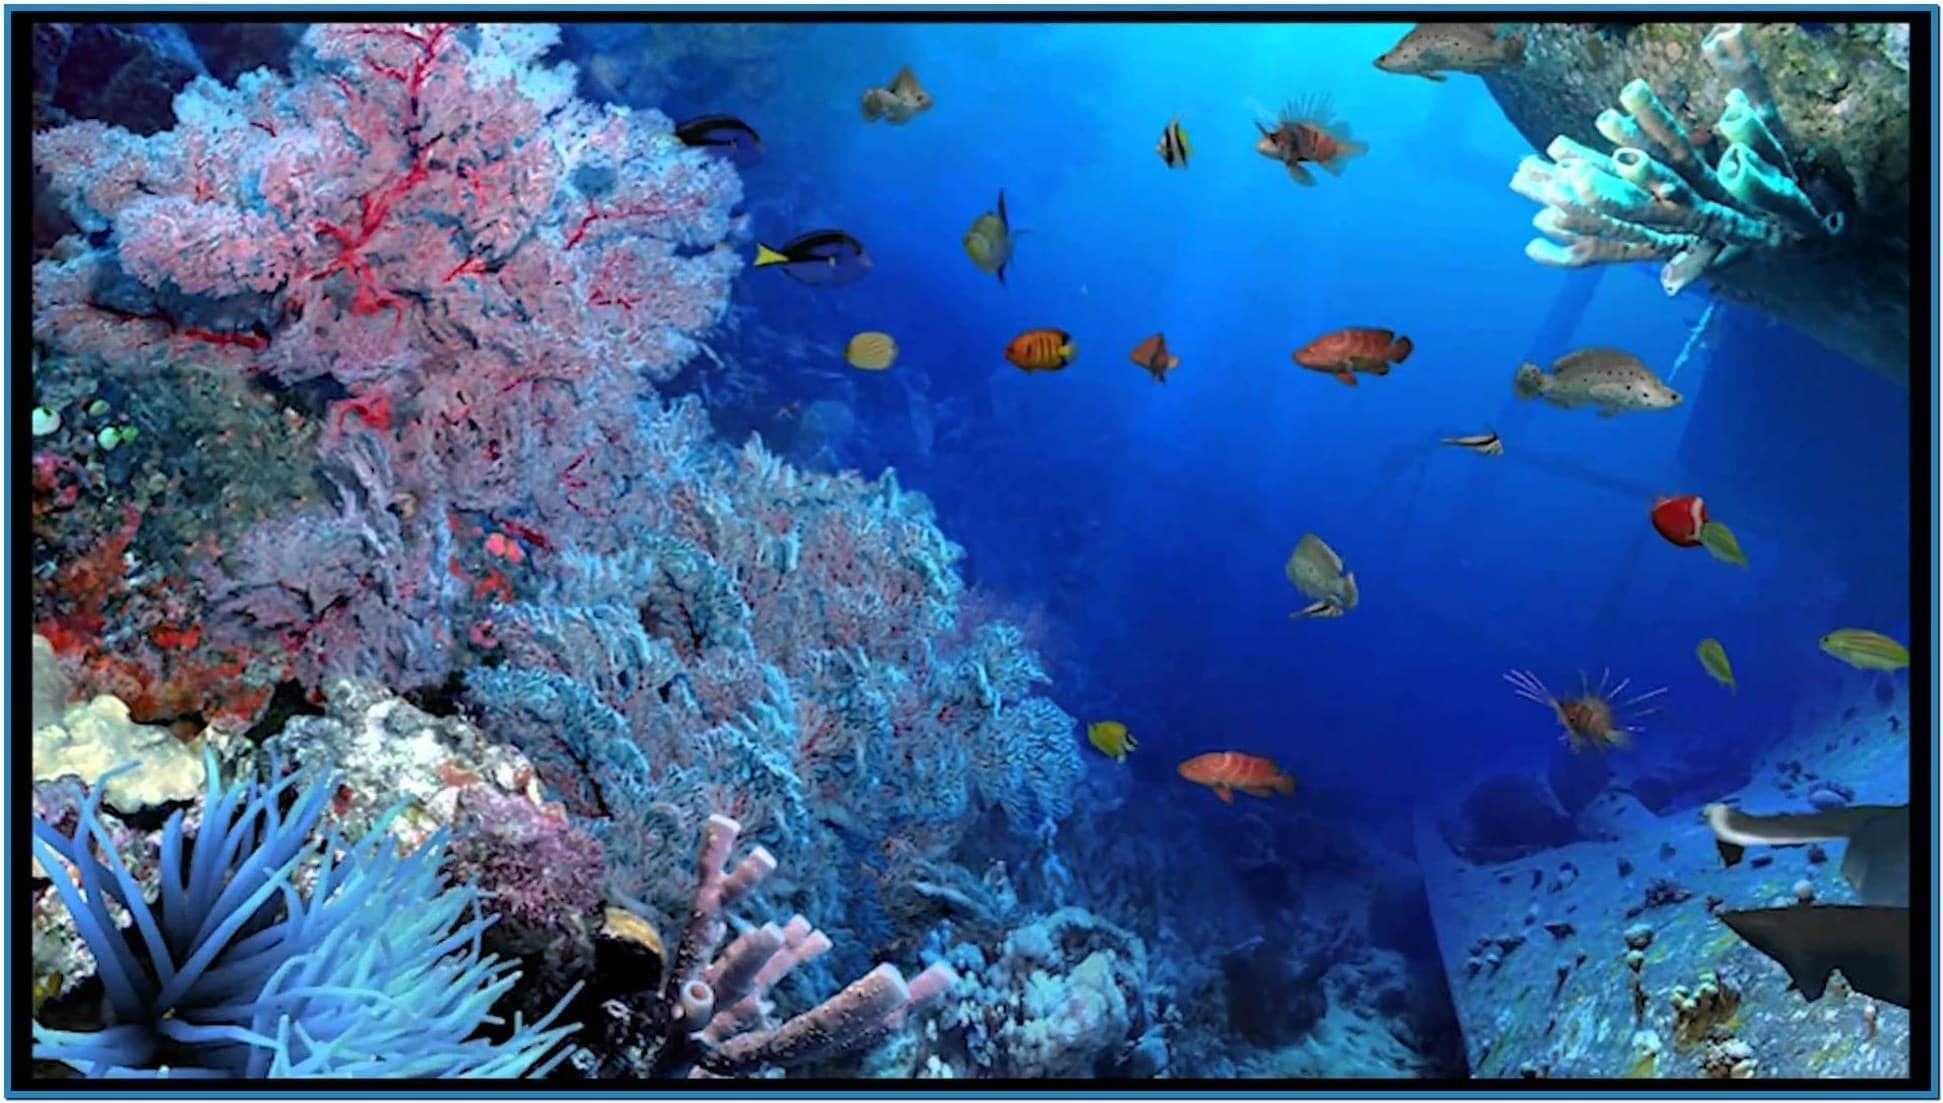  Aquarien Hintergrundbild 1943x1103. Aquarium Live Wallpaper for PC